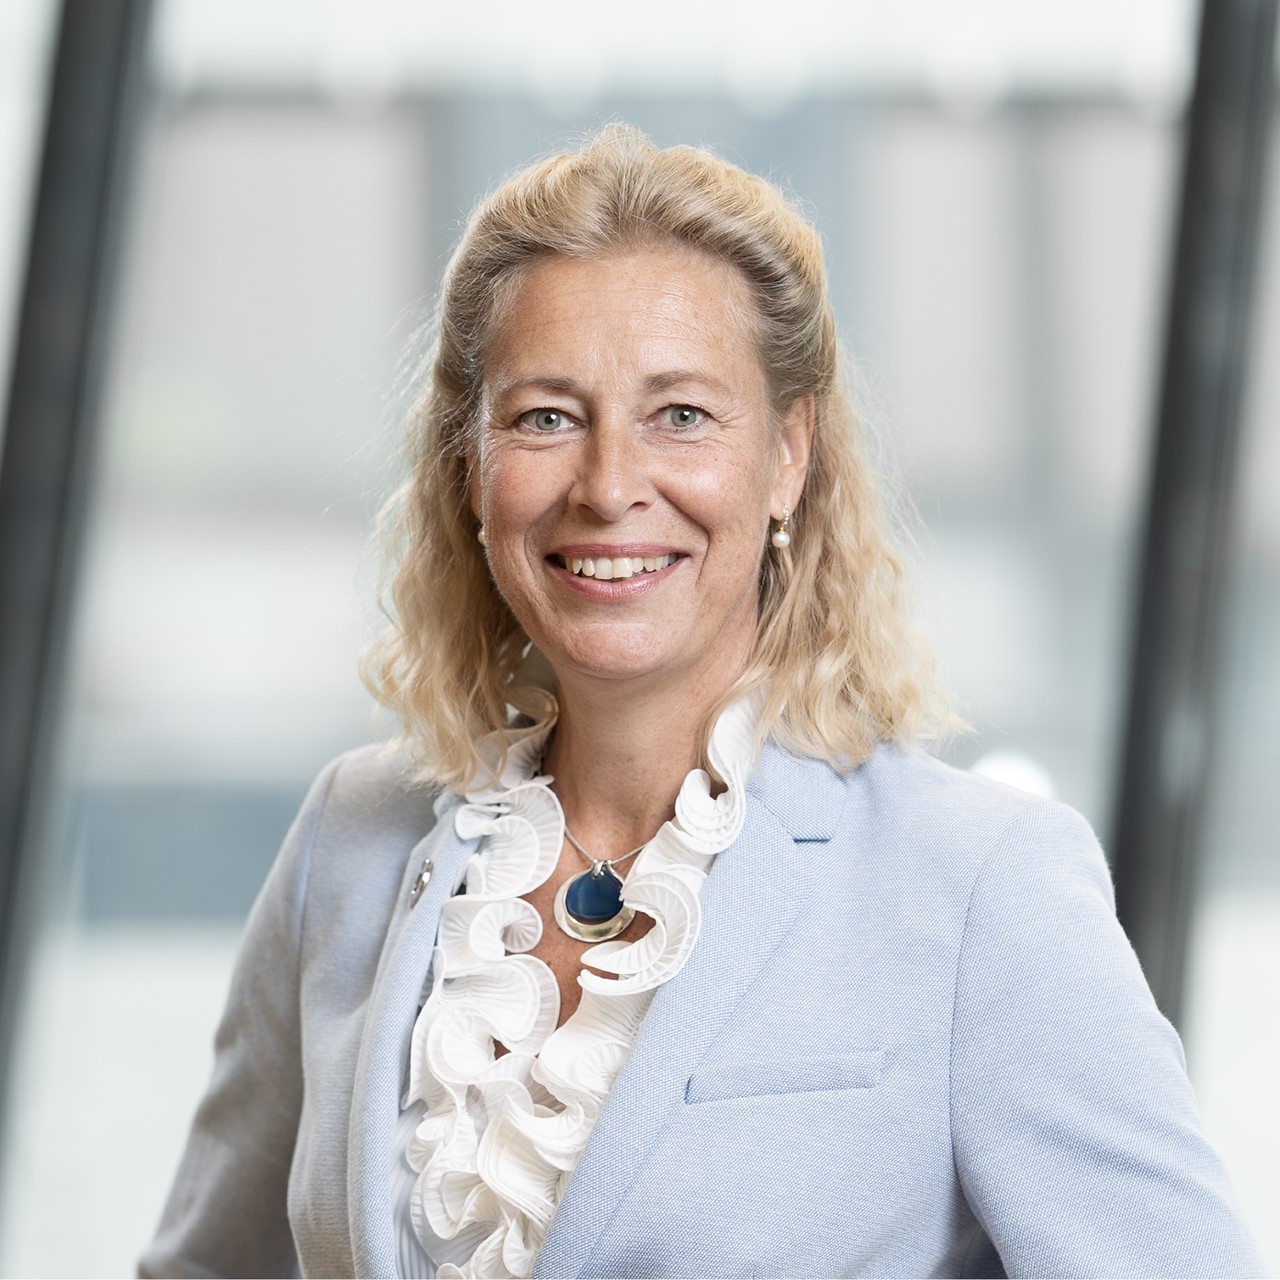 Annika Ramsköld, Head of Sustainability at Vattenfall